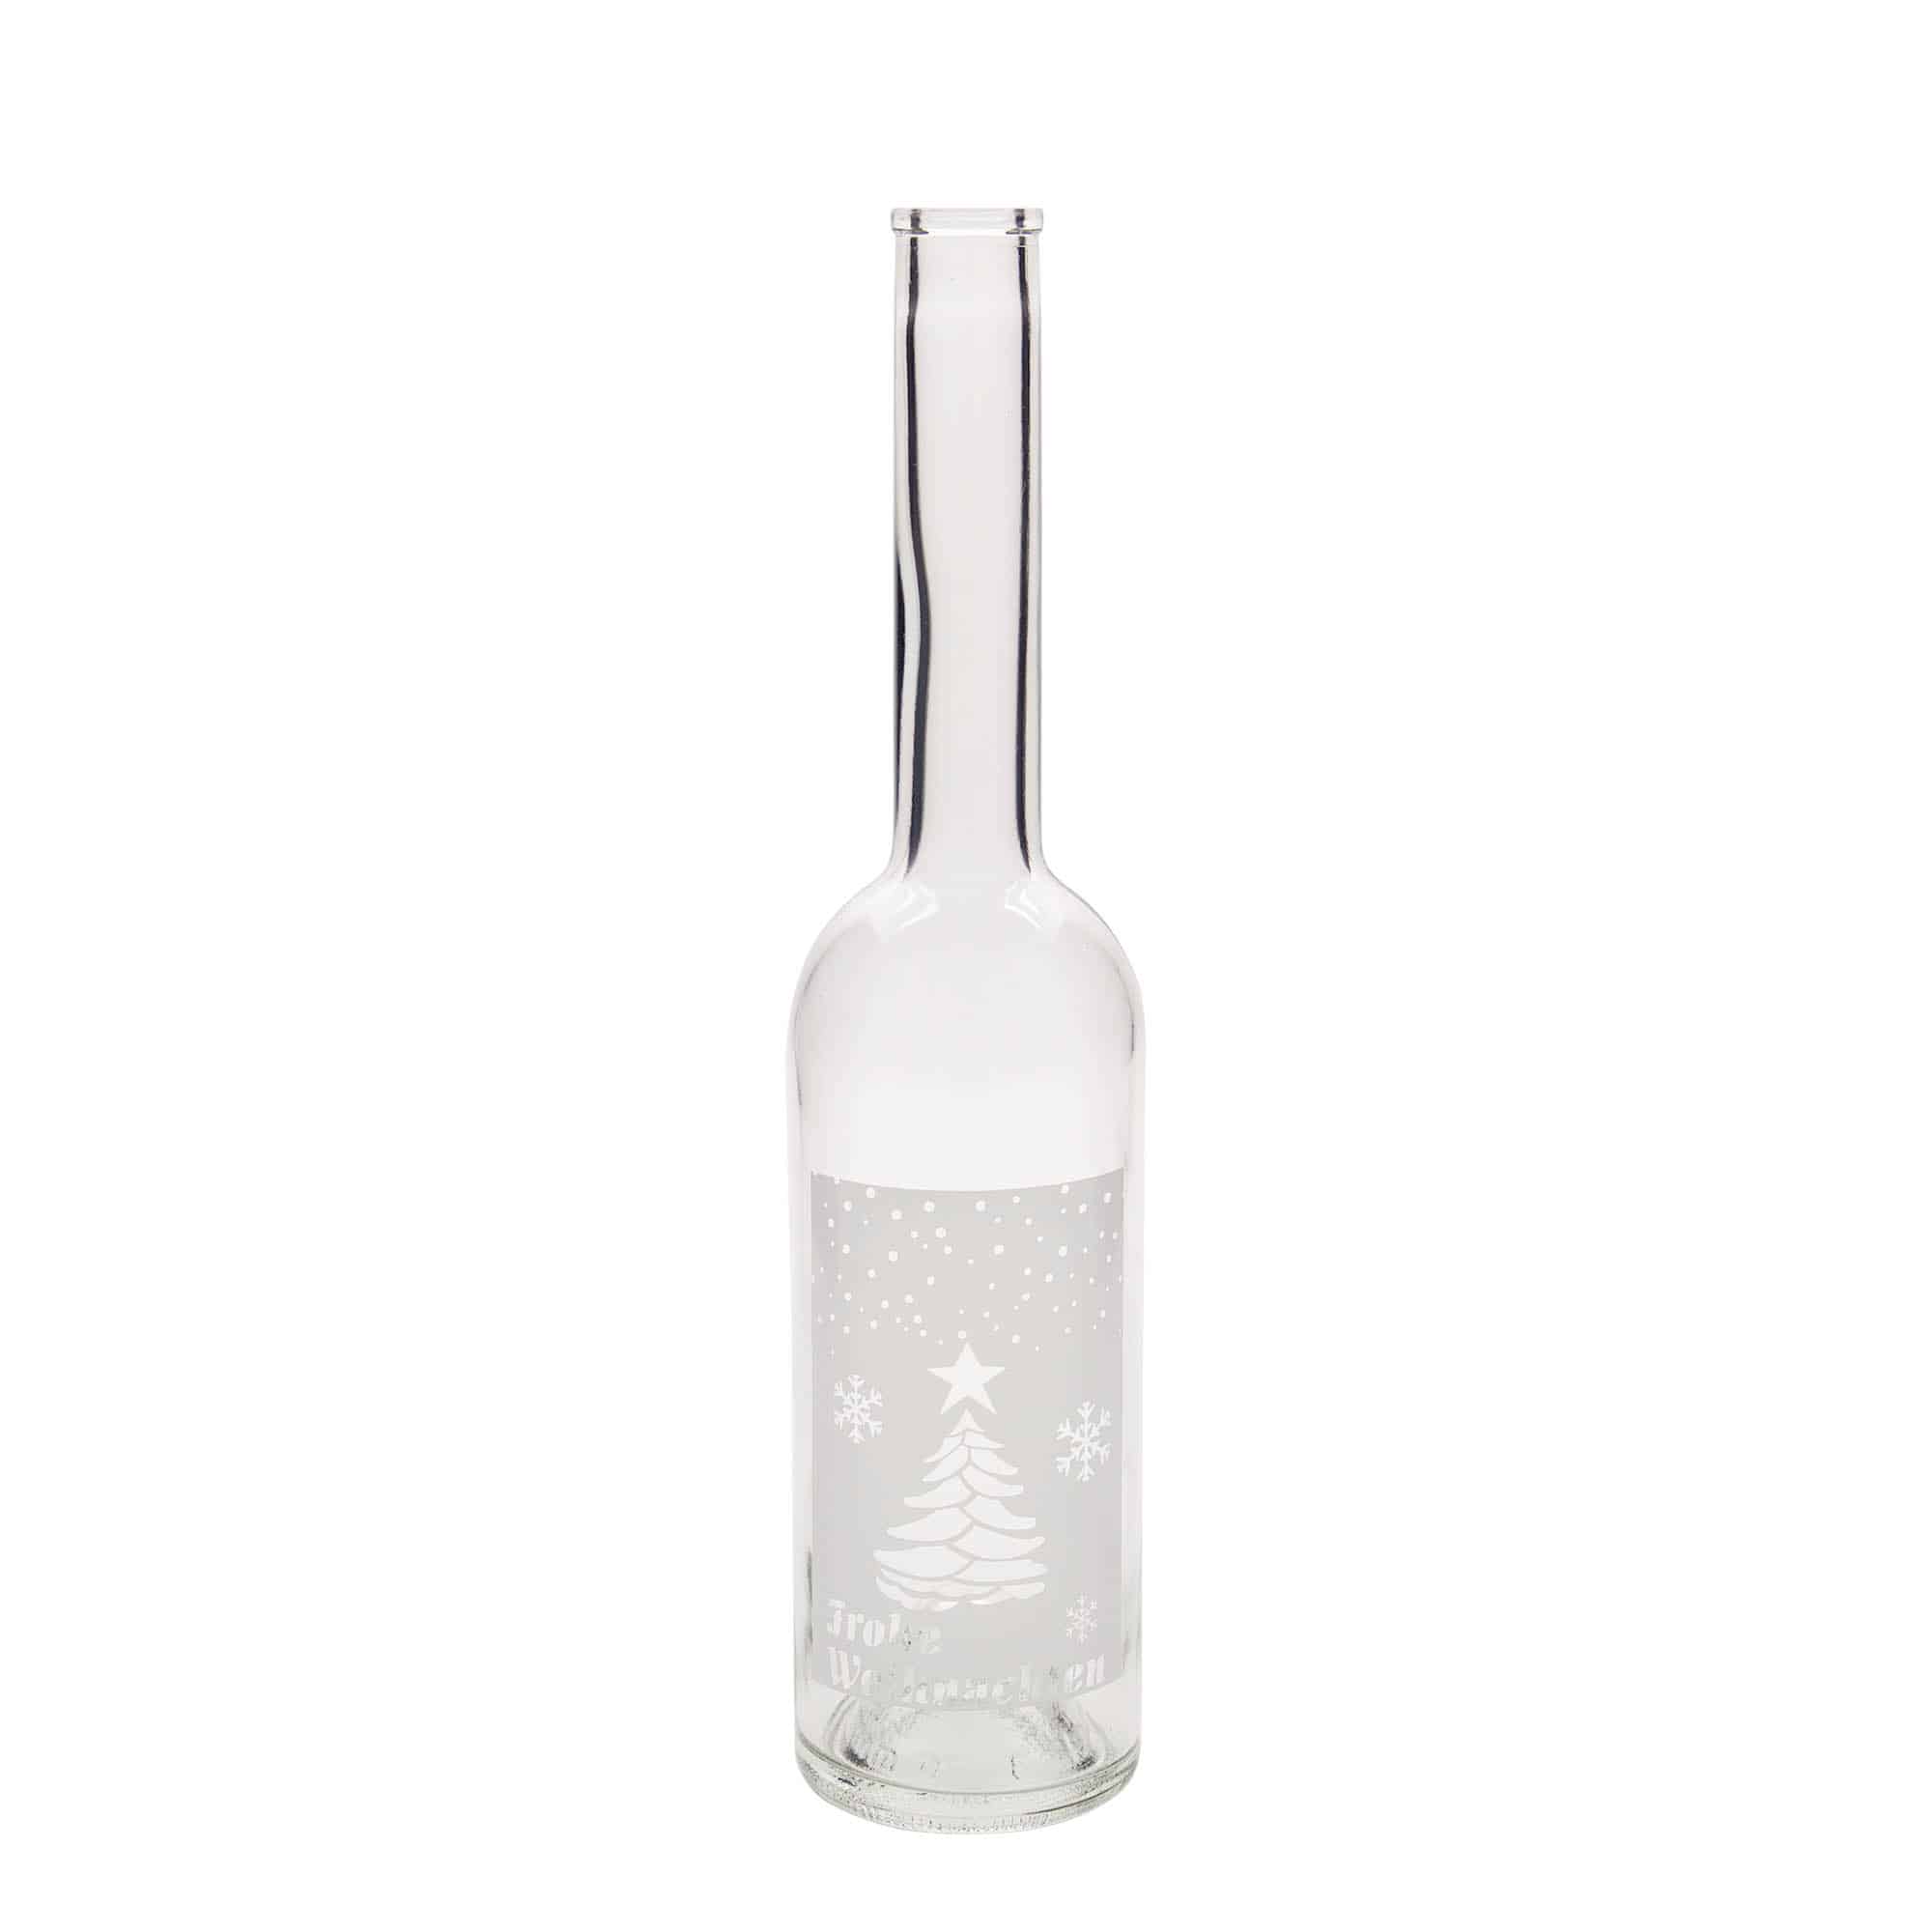 500 ml glass bottle 'Opera', print: white Christmas, closure: cork